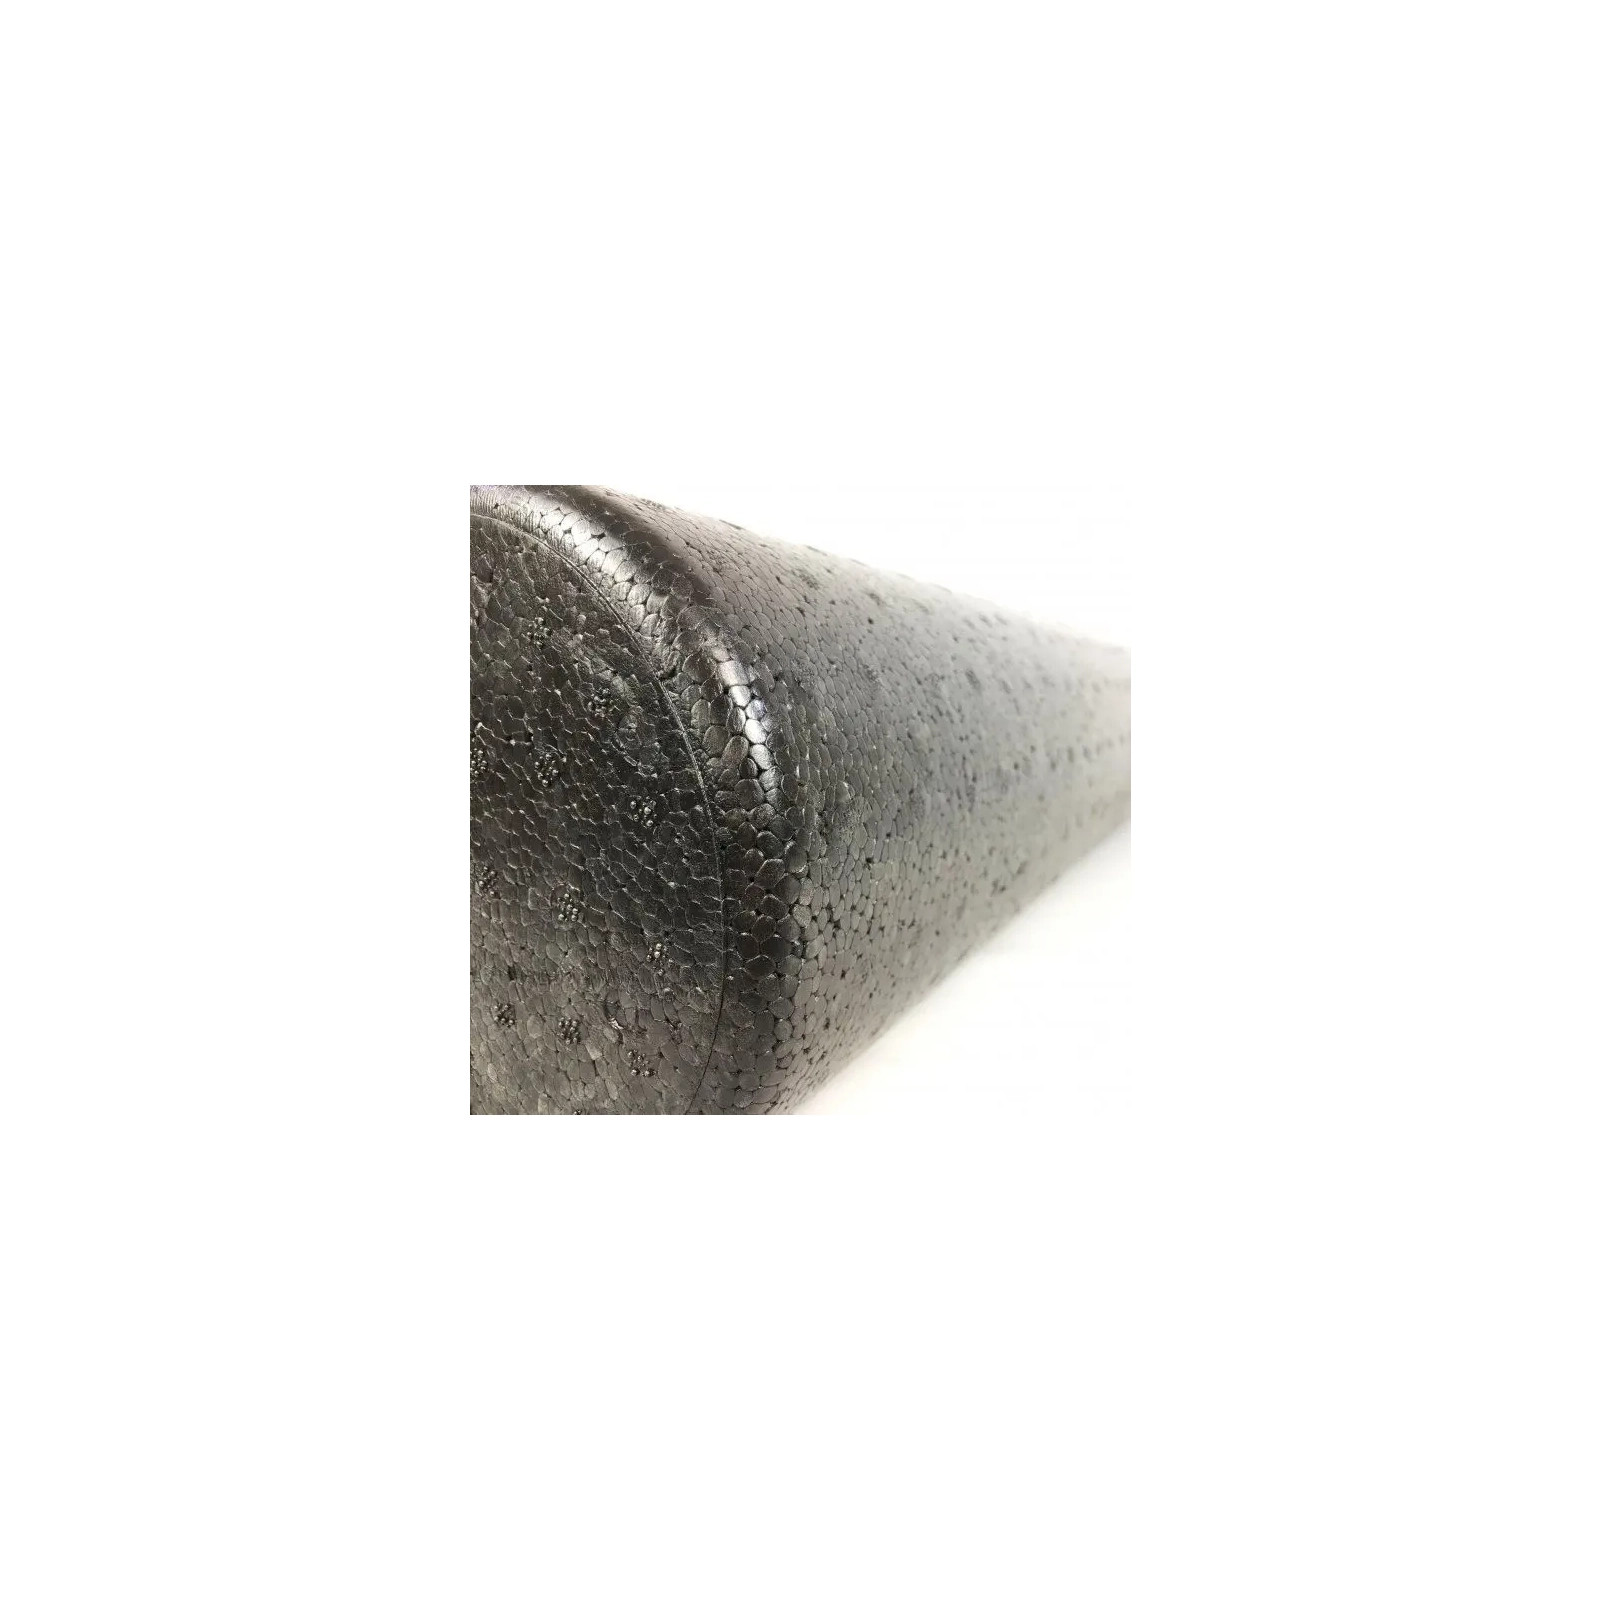 Масажный ролик U-Powex гладкий UP_1008 EPP foam roller 90х15cm (UP_1008_epp_(90cm)) изображение 7